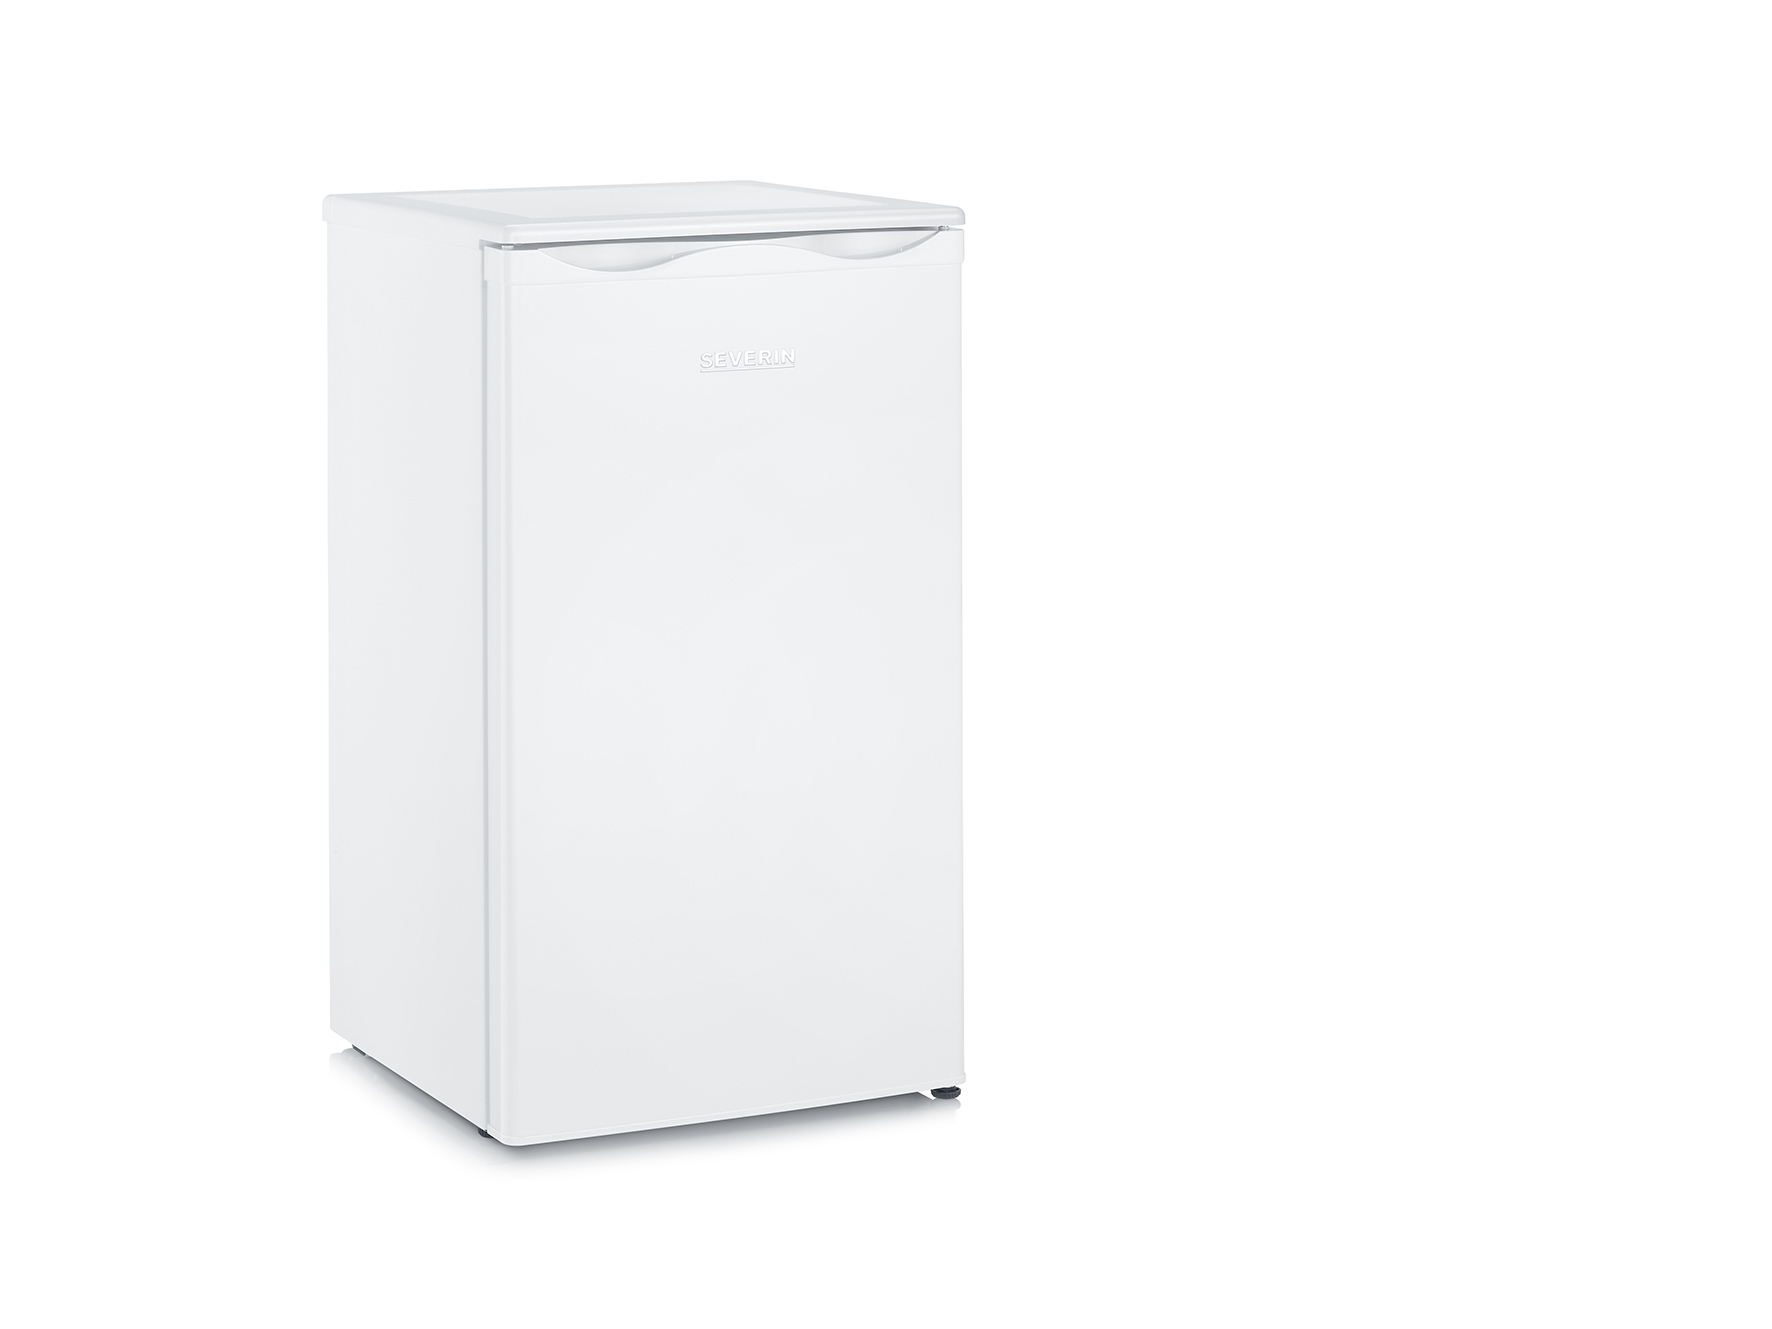 Severin VKS 8805 wit koelkast | Kieskeurig.nl | helpt je kiezen